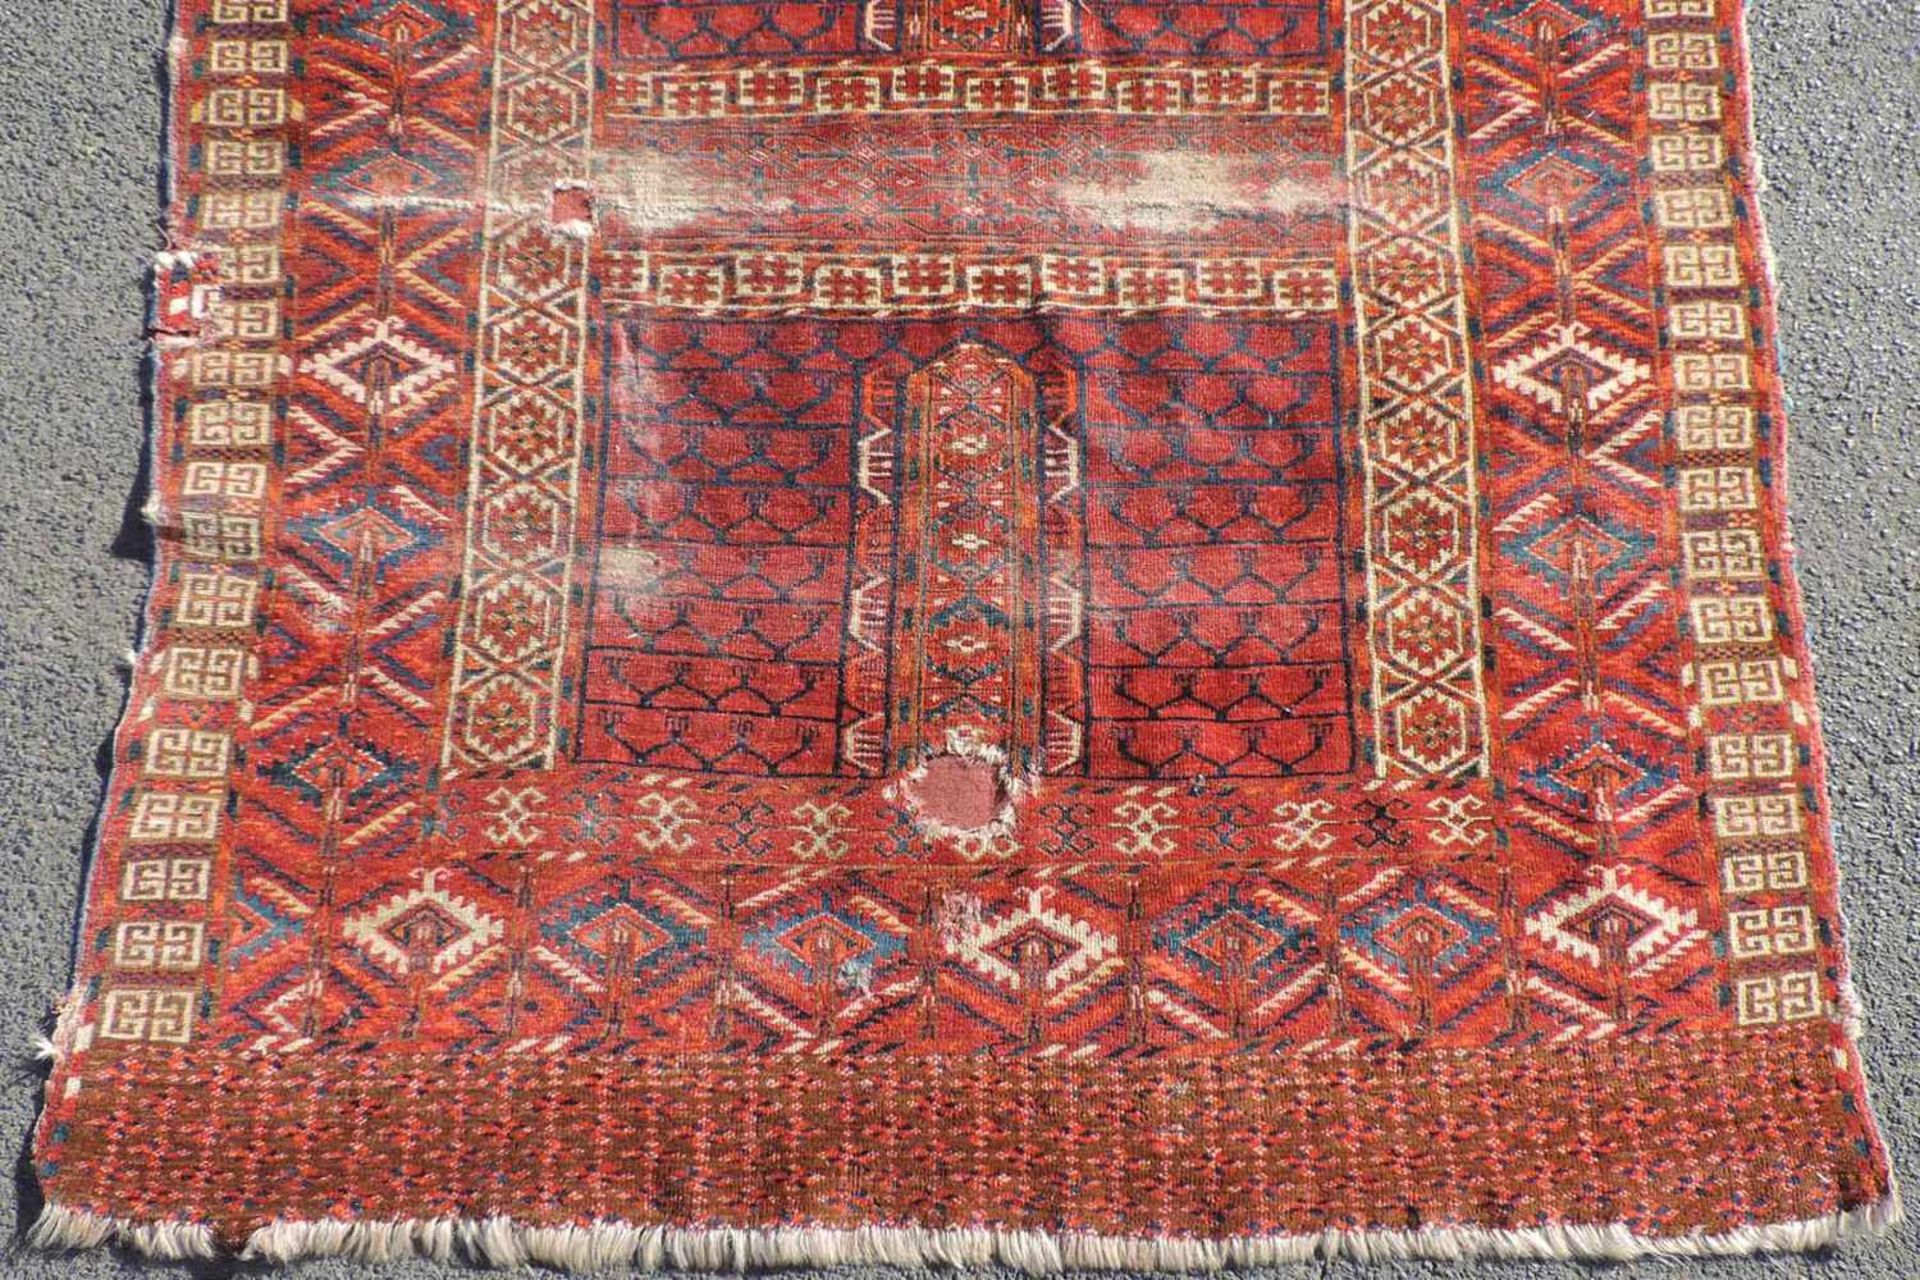 Tekke Ensi Stammesteppich. Turkmenistan. Antik, Mitte 19. Jahrhundert.167 cm x 118 cm. Handgeknüpft. - Bild 2 aus 6